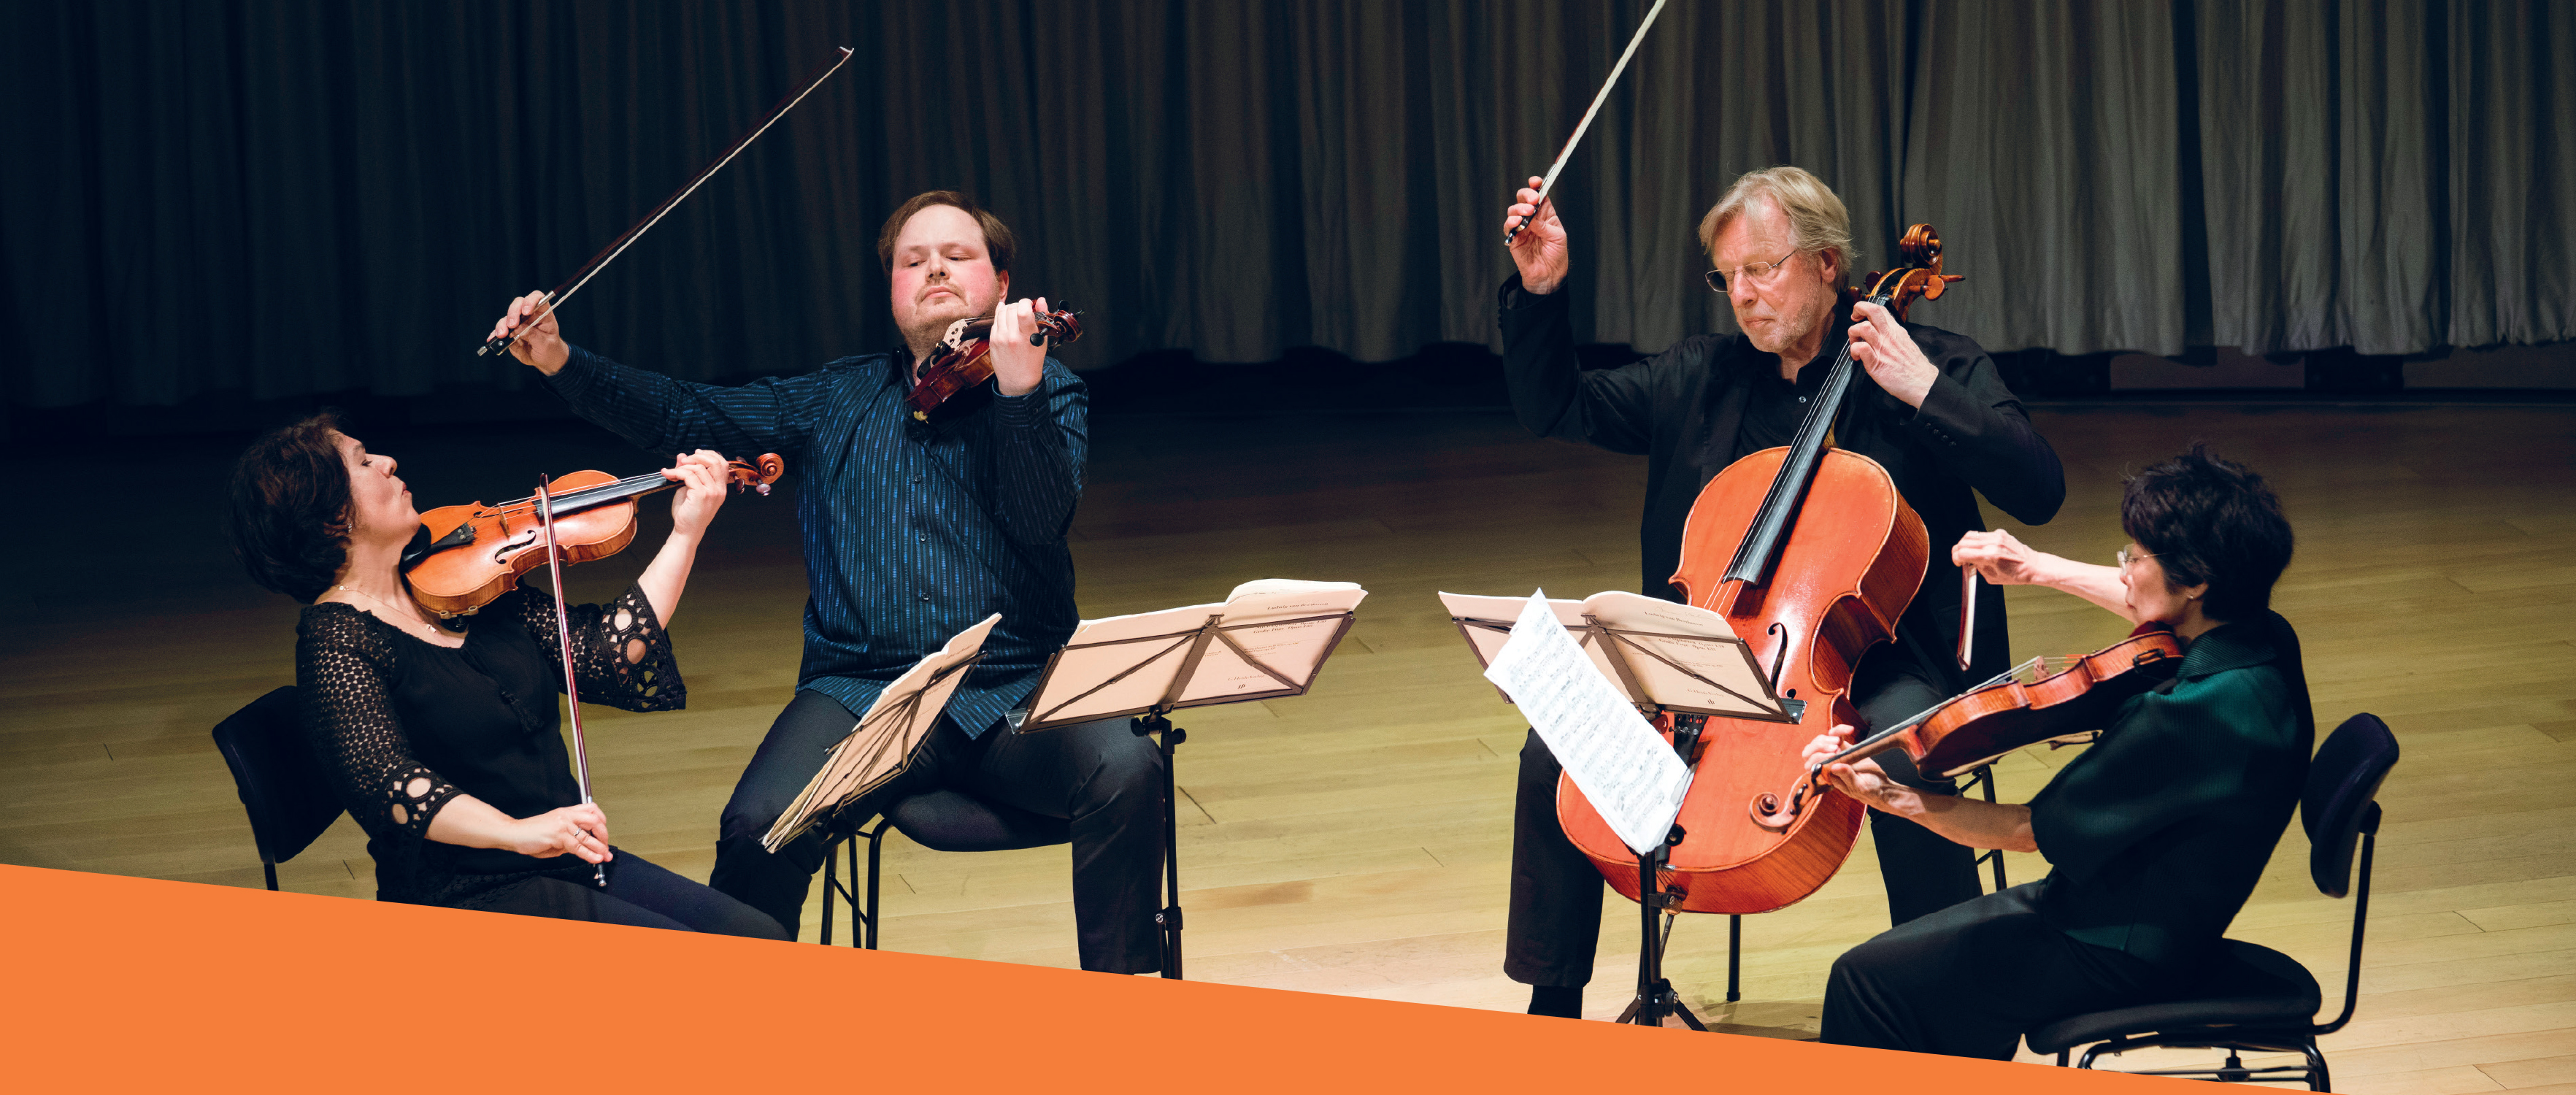 Master Classes in Violin & Cello Organized by the Barenboim-Said Akademie, Berlin